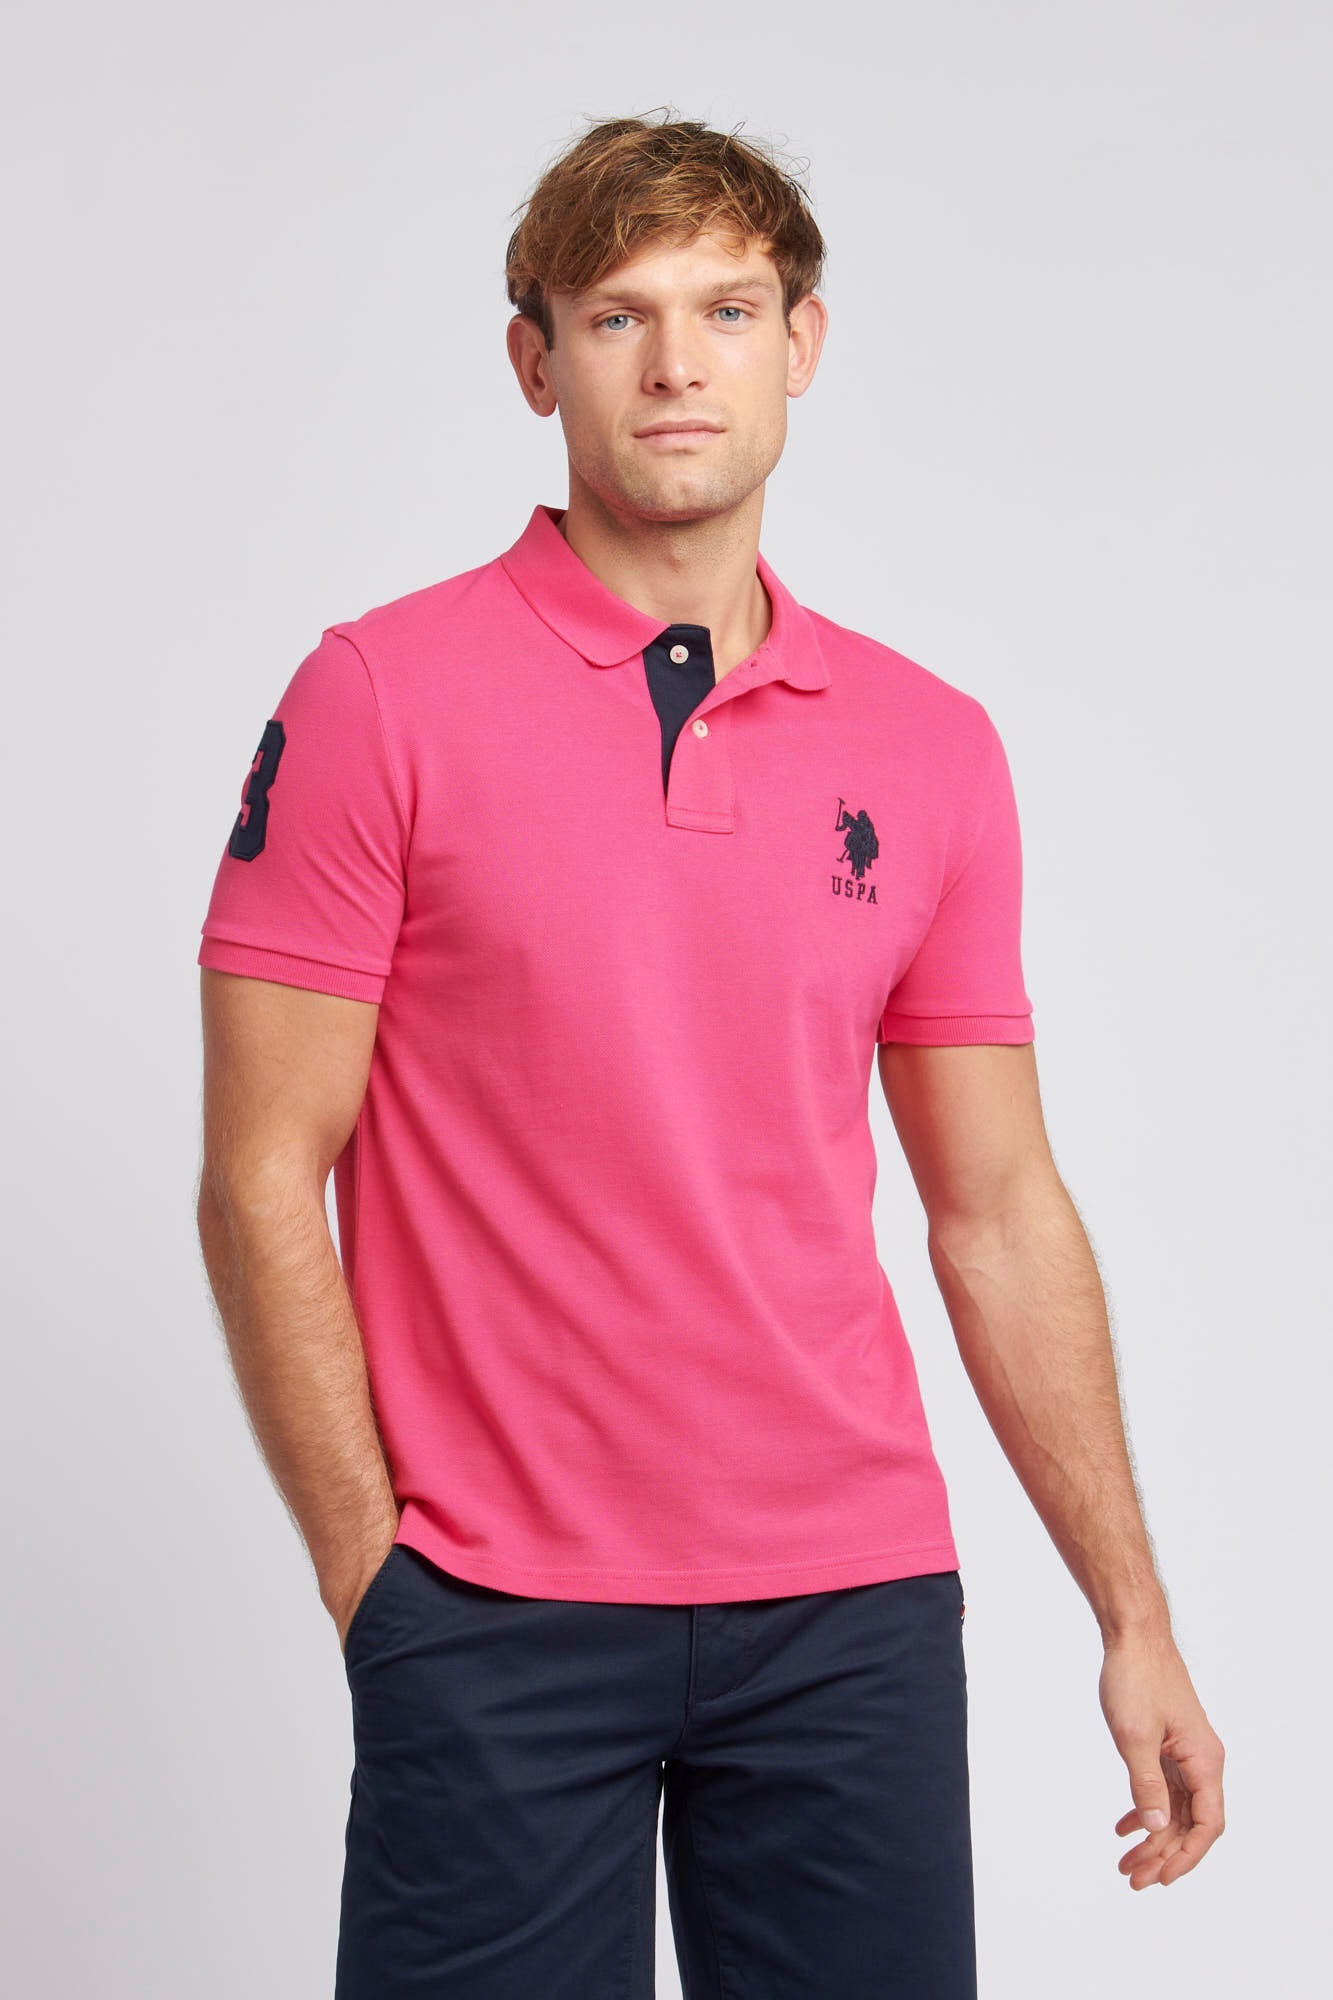 U.S. Polo Assn. Mens Player 3 Pique Polo Shirt in Raspberry Sorbet